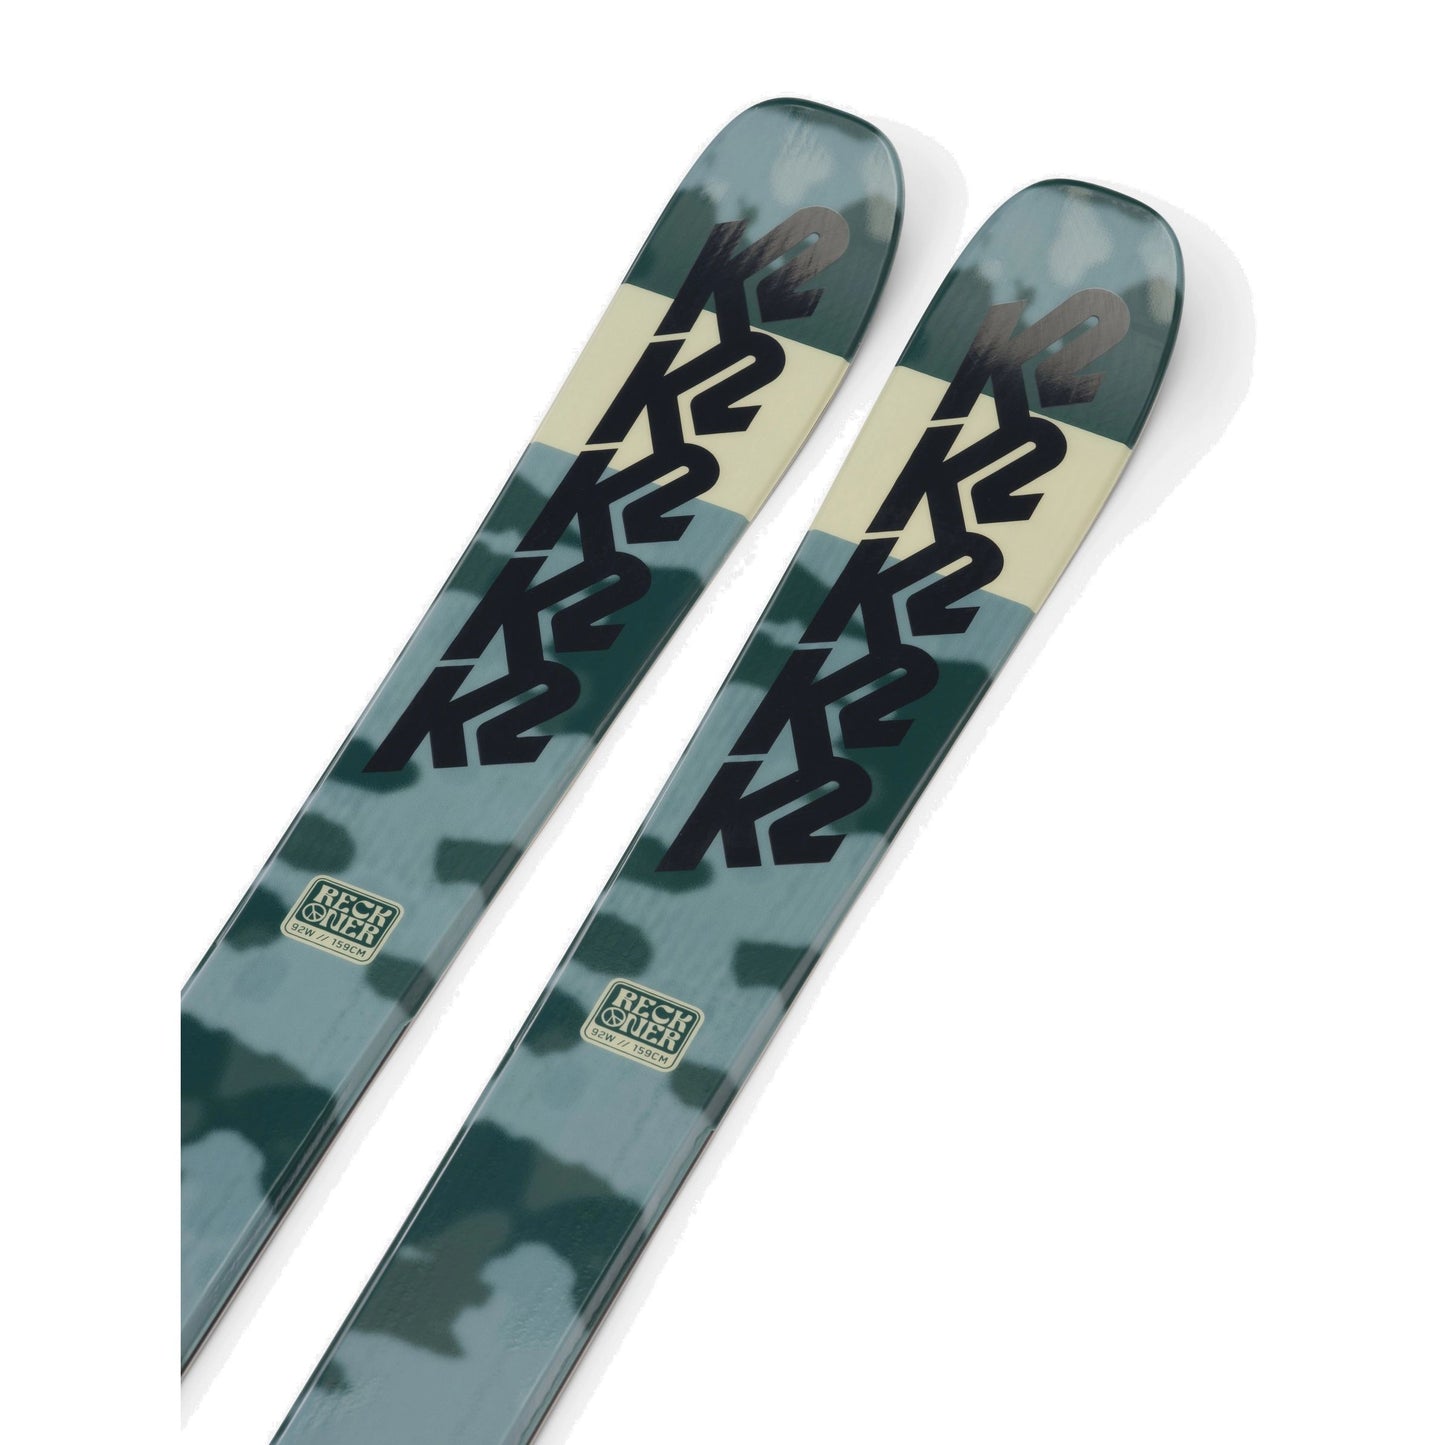 K2 Women's Reckoner 92 Skis Skis